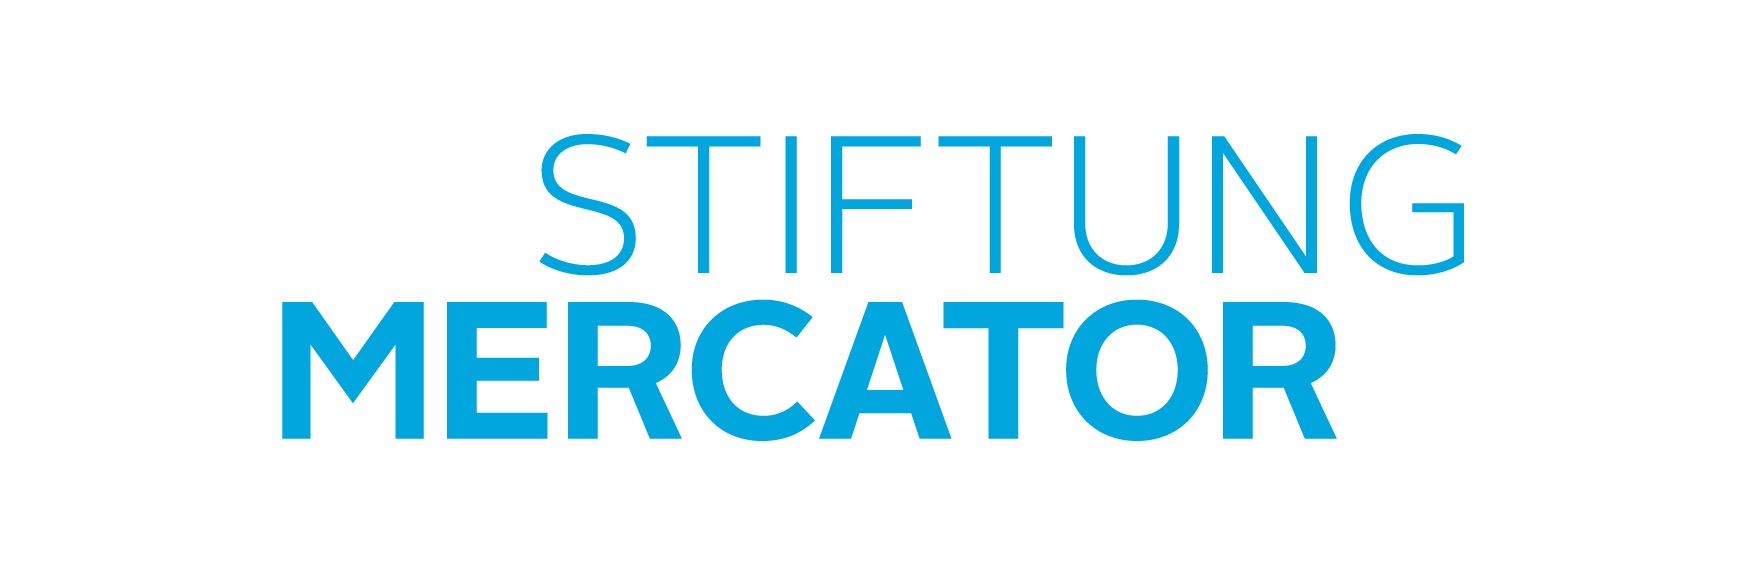 institution logo